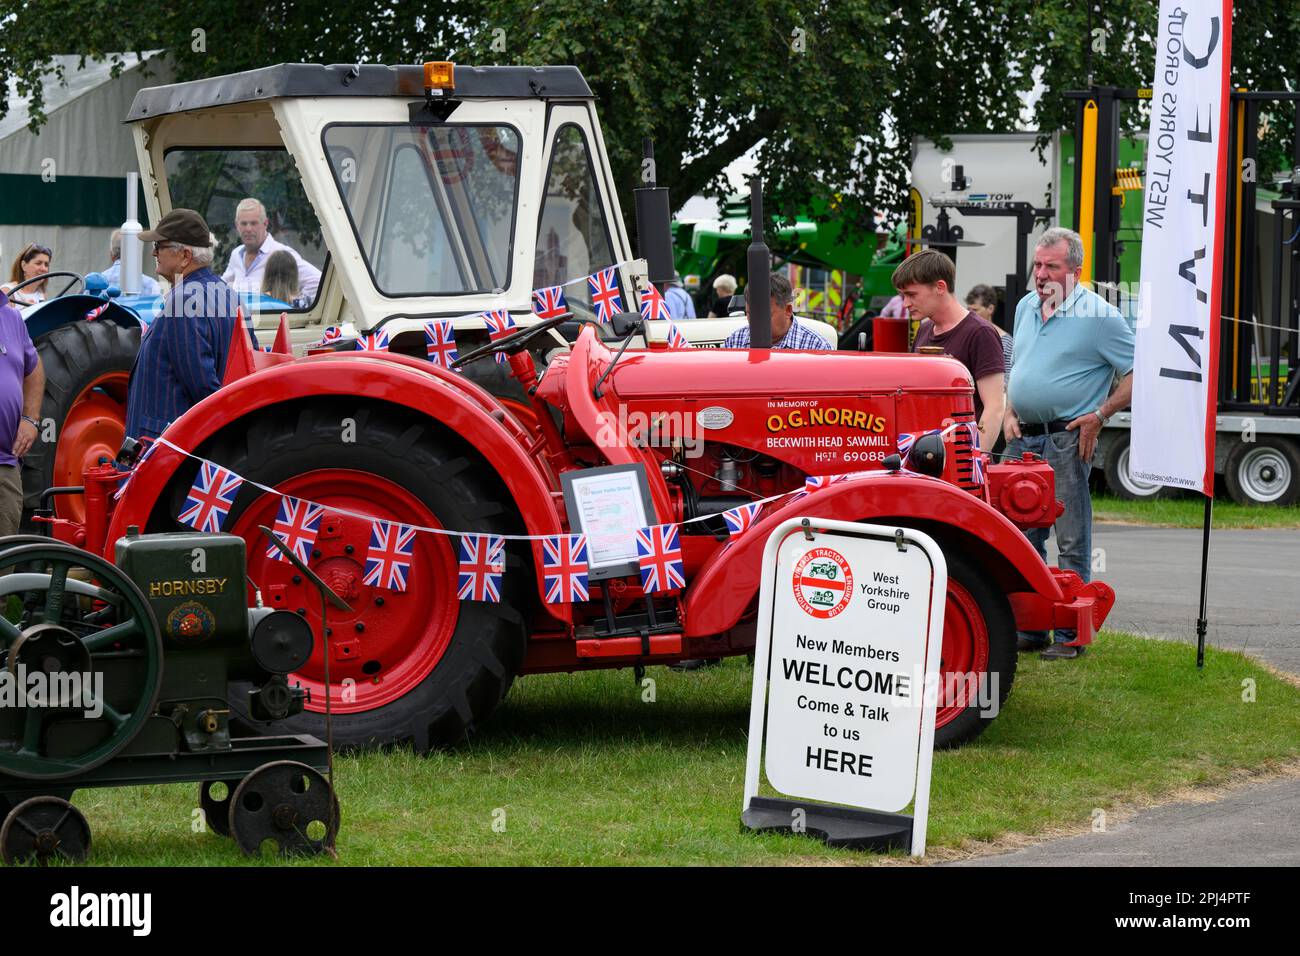 Rare tracteur rouge David Brown (modèle de battage VTK 143 des années 1940) et le public regarde - Great Yorkshire Show 2022, Harrogate, Angleterre, Royaume-Uni. Banque D'Images